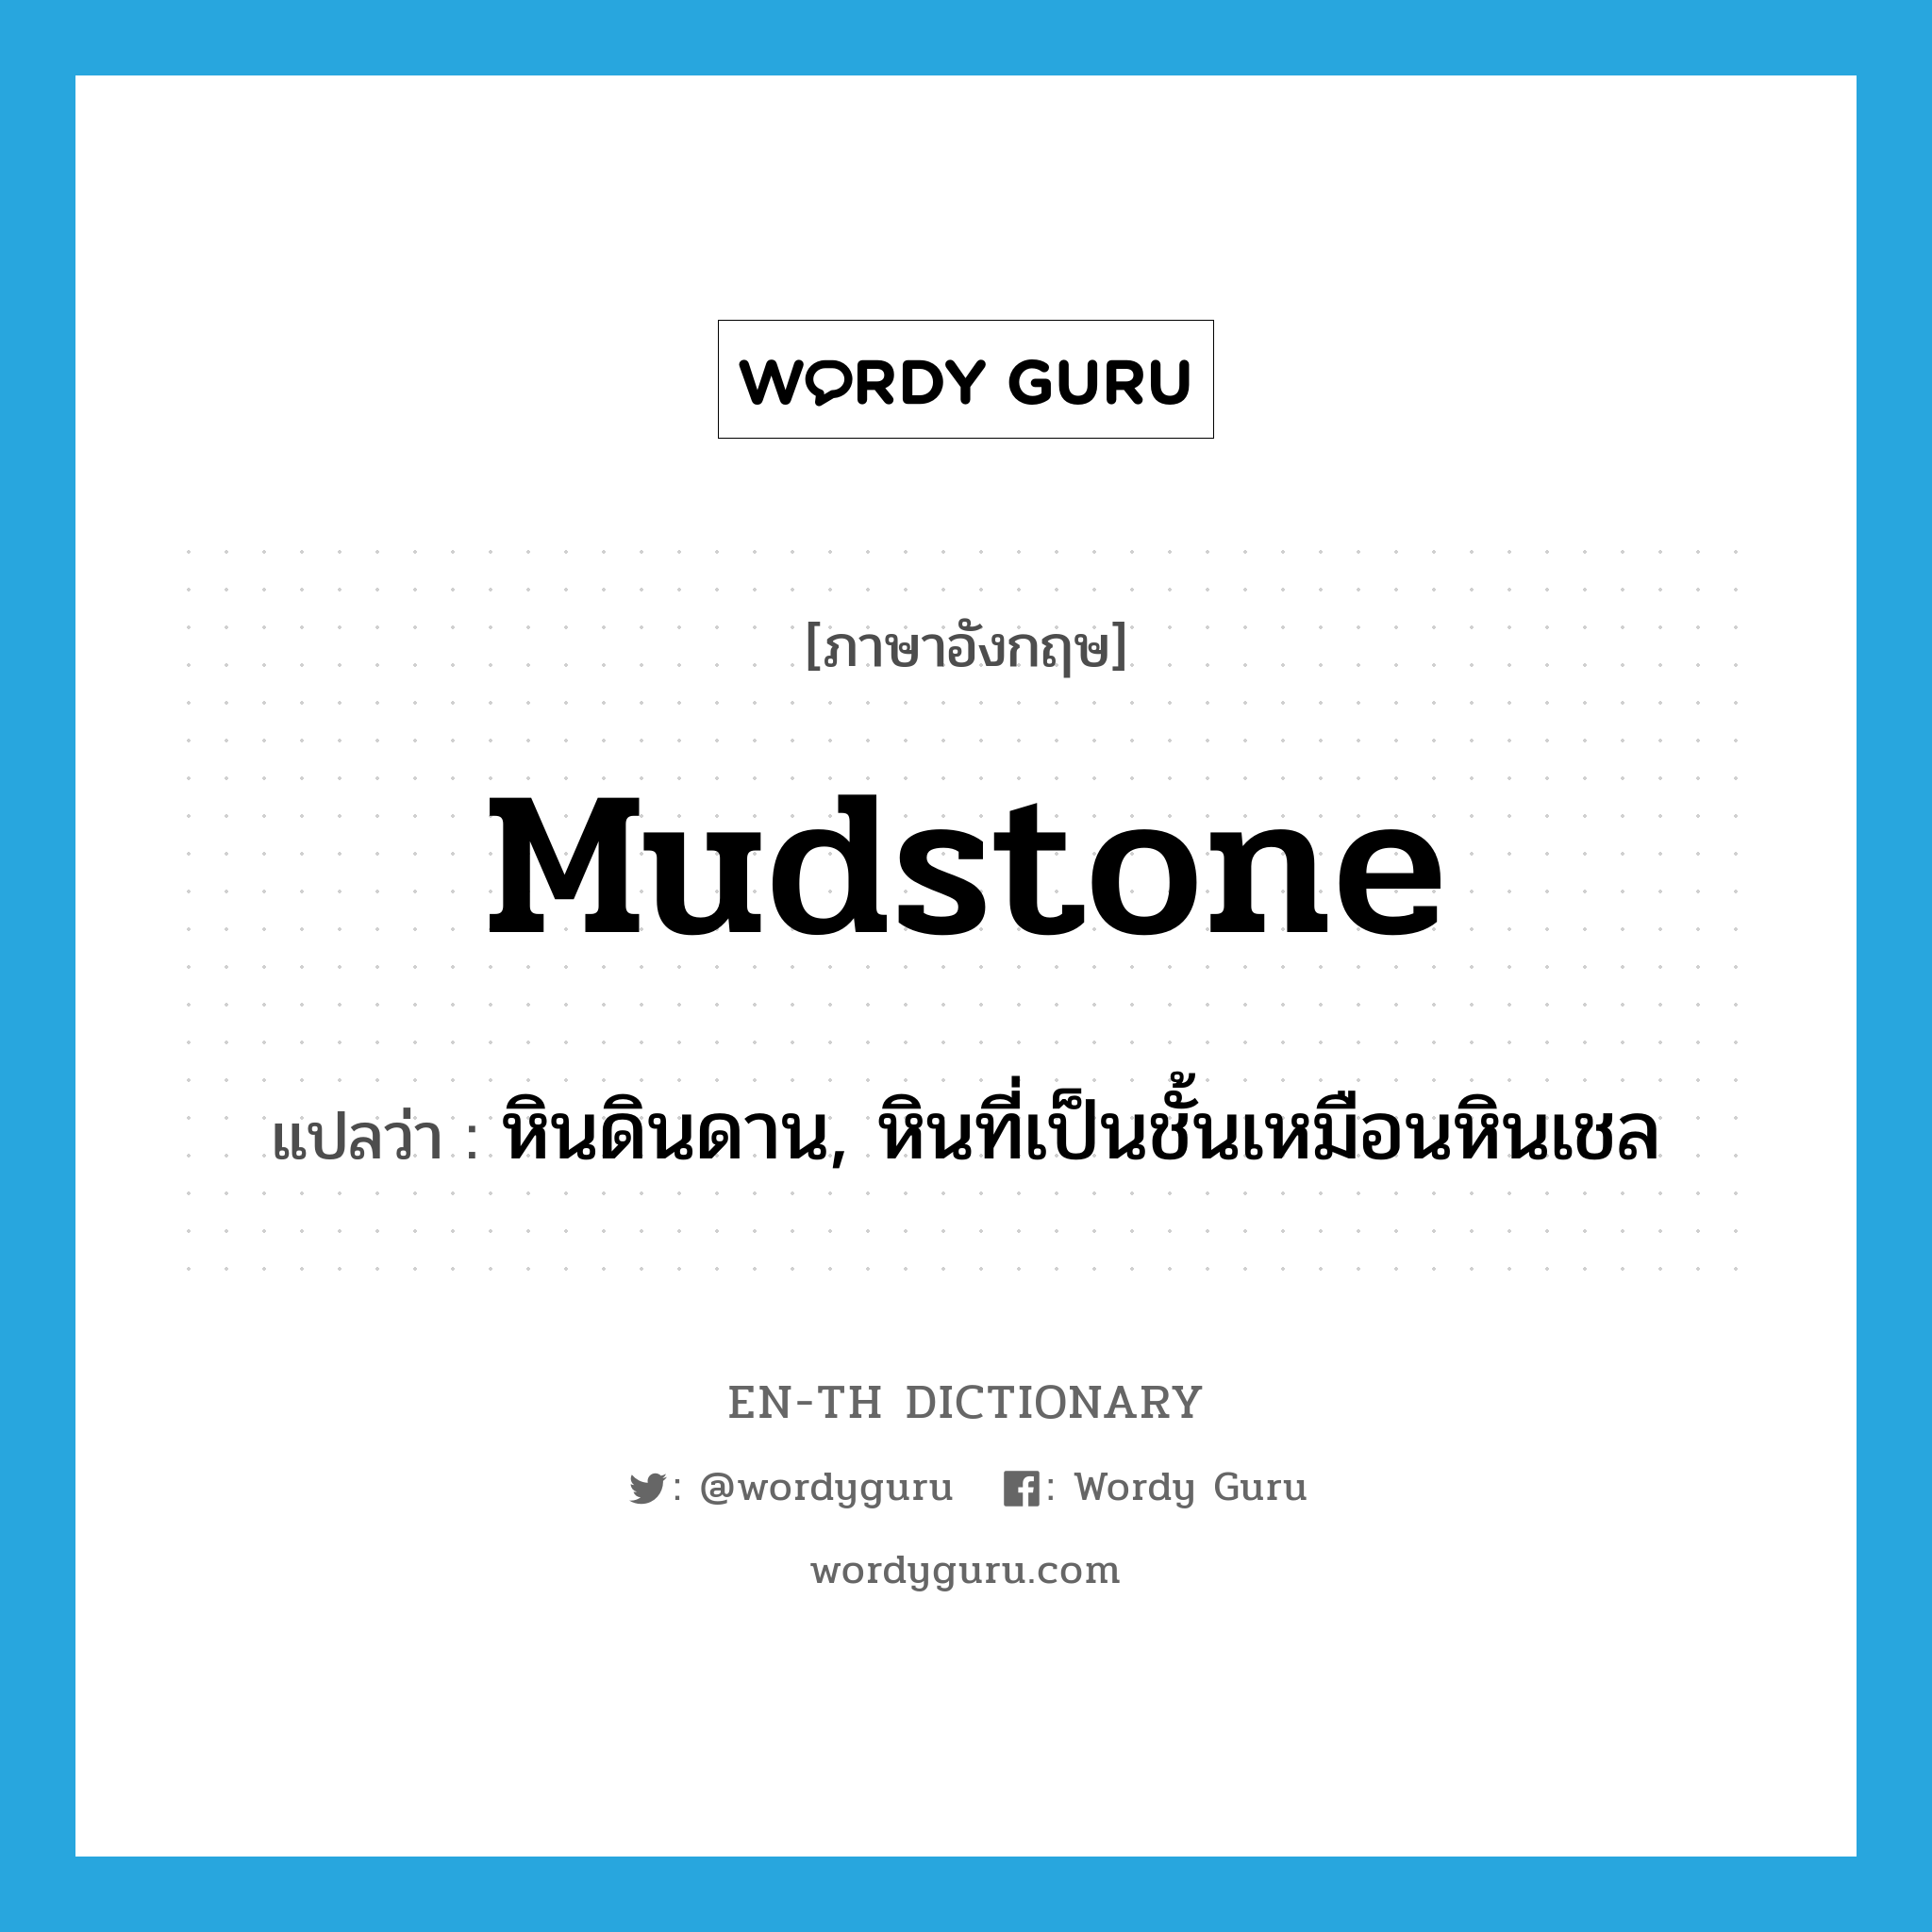 mudstone แปลว่า?, คำศัพท์ภาษาอังกฤษ mudstone แปลว่า หินดินดาน, หินที่เป็นชั้นเหมือนหินเชล ประเภท N หมวด N